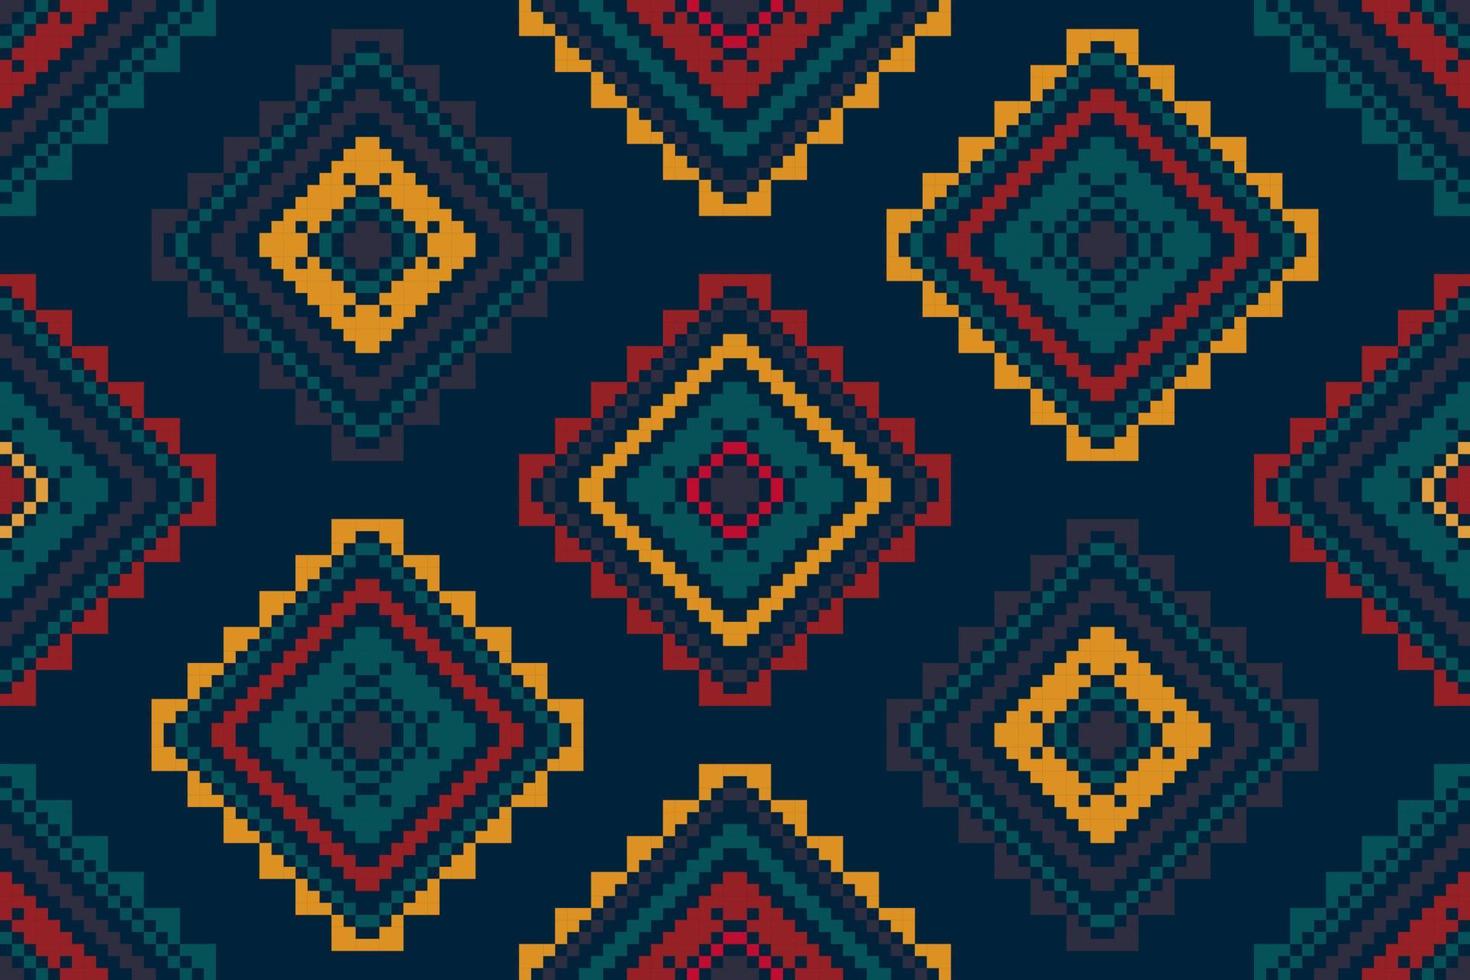 Ikat ethnisches ungarisches polnisches Volksmusterdesign. aztekischer stoffteppich boho mandalas textildekor tapete. stammes-native motiv blume traditionelle stickerei vektor illustriert